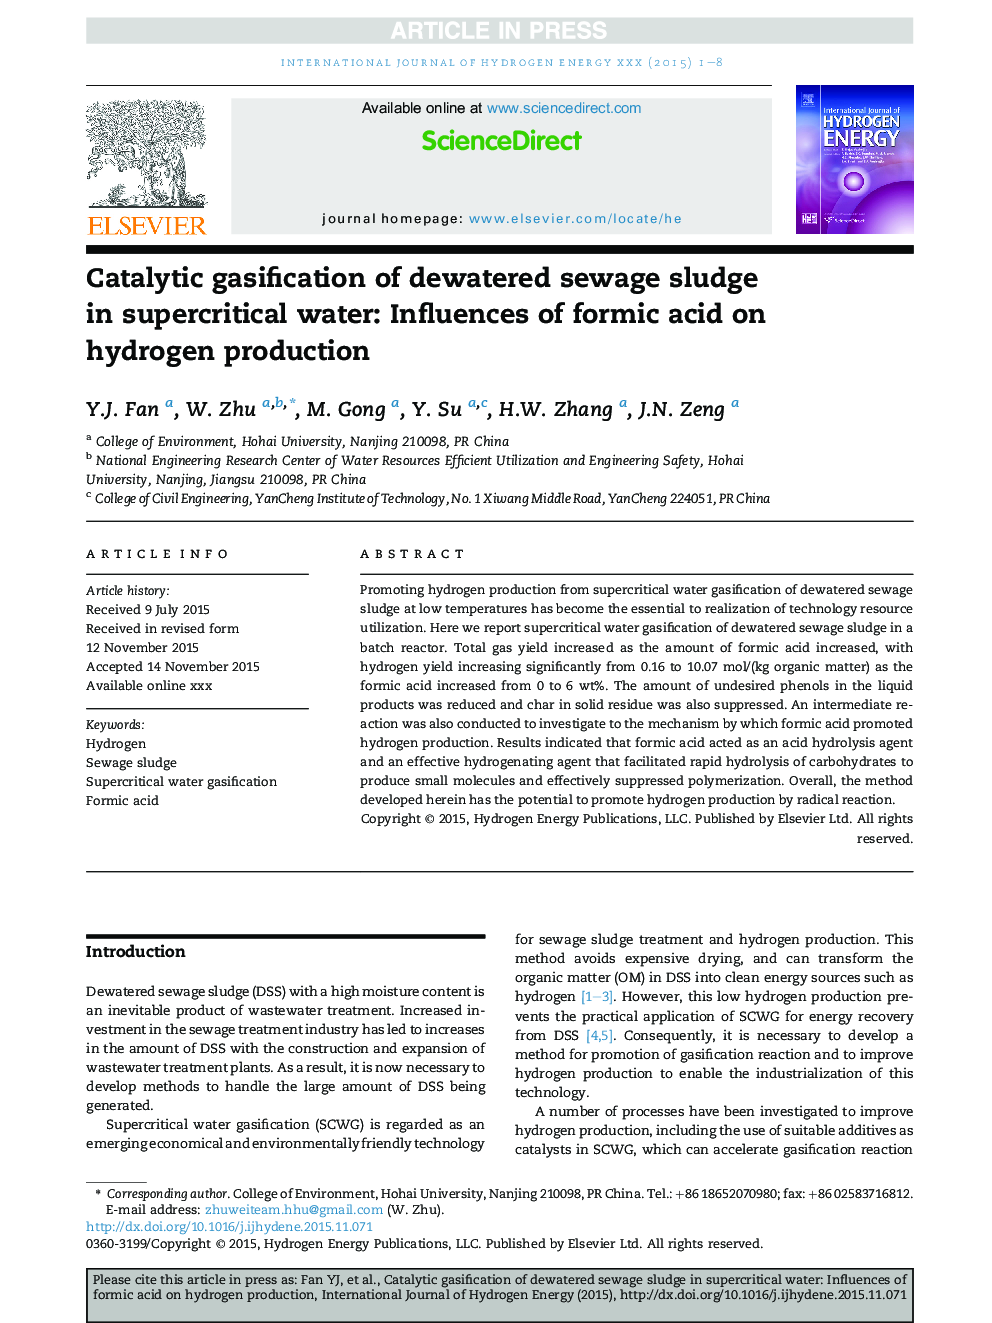 گازاژسی کاتالیزوری لجن فاضلاب آبگیری شده در آب فوق بحرانی: تأثیر اسید فرمیک بر تولید هیدروژن 